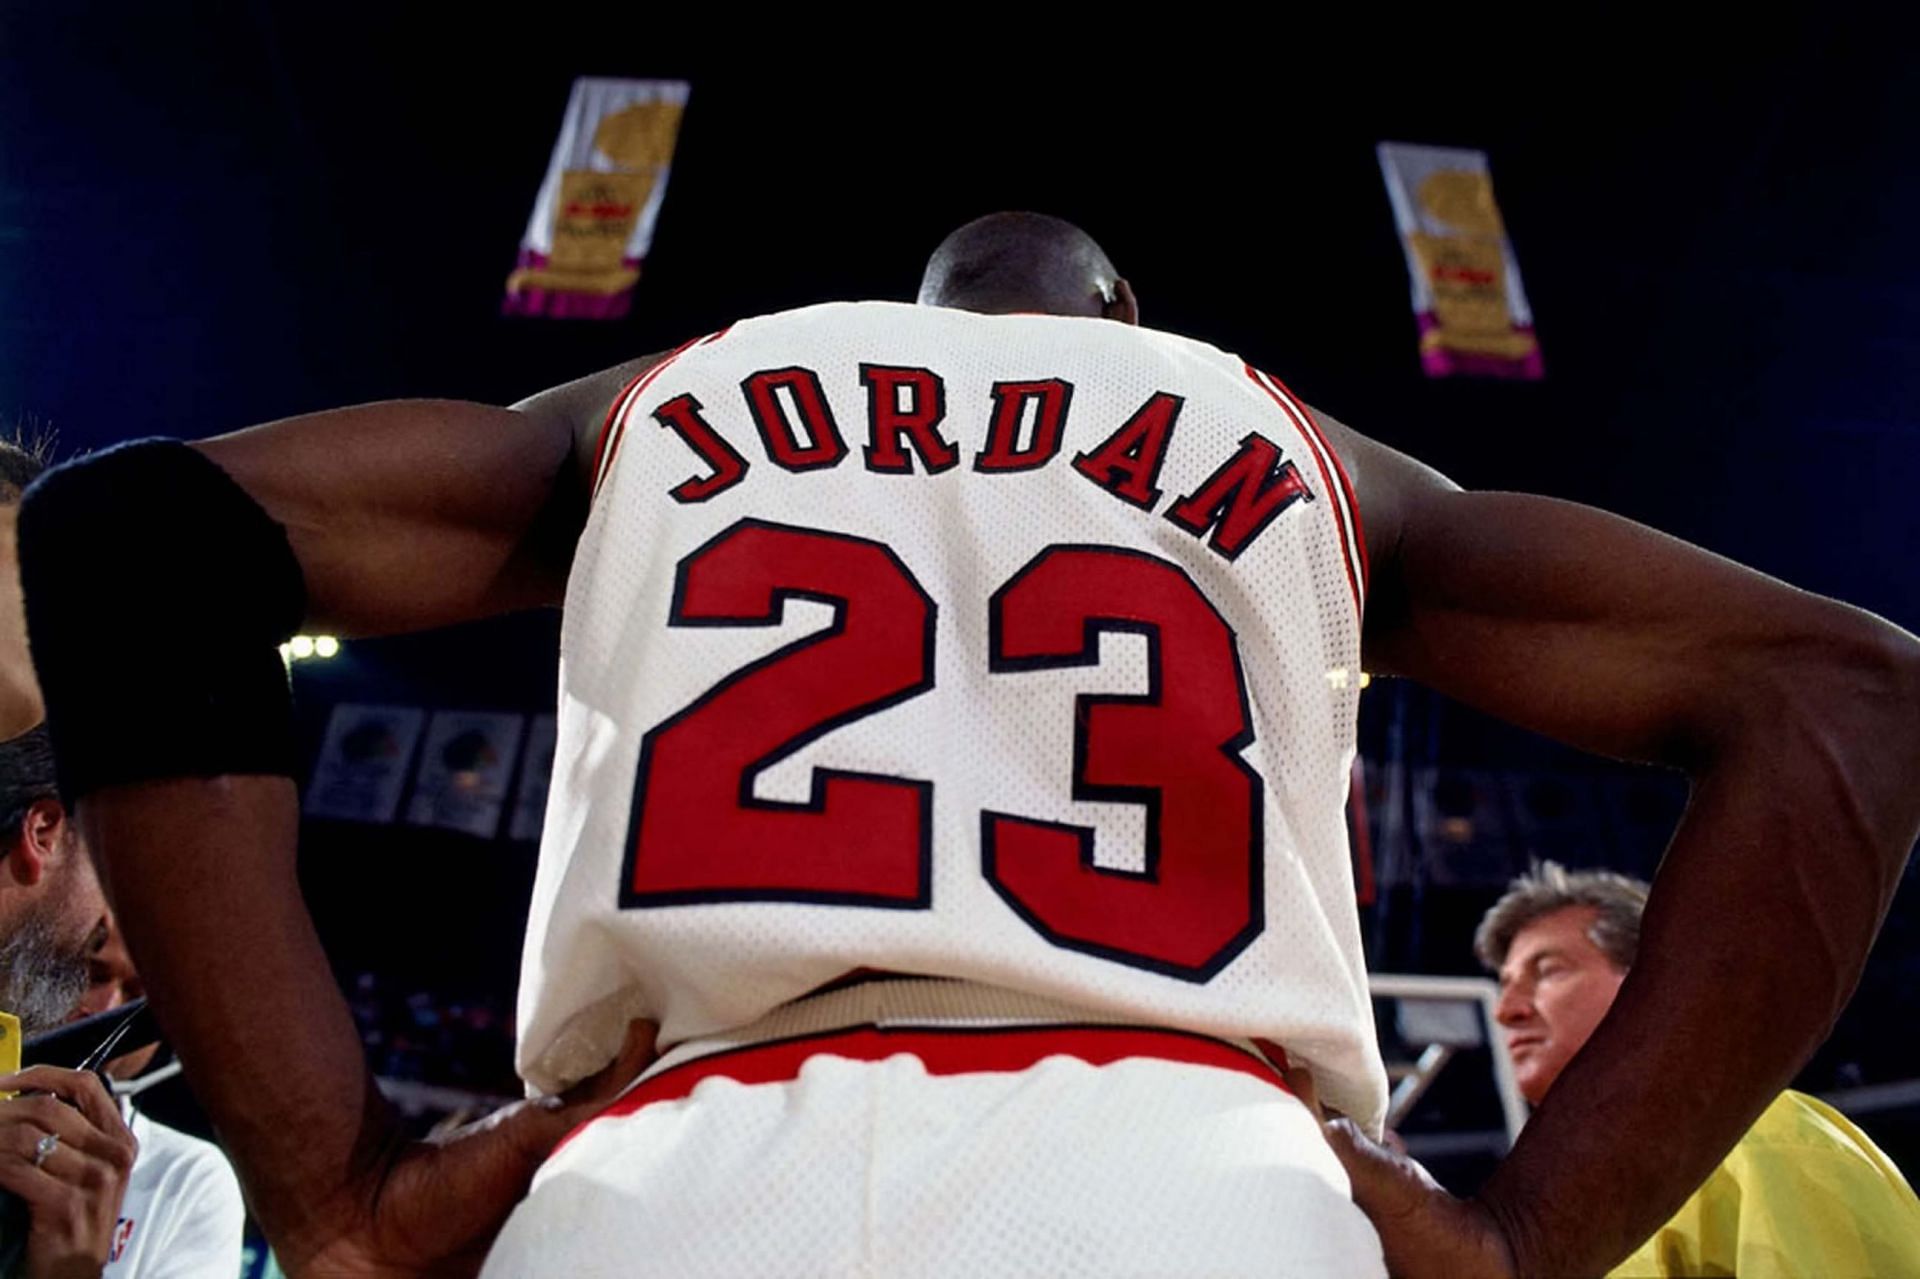 Michael Jordan during his prime NBA days